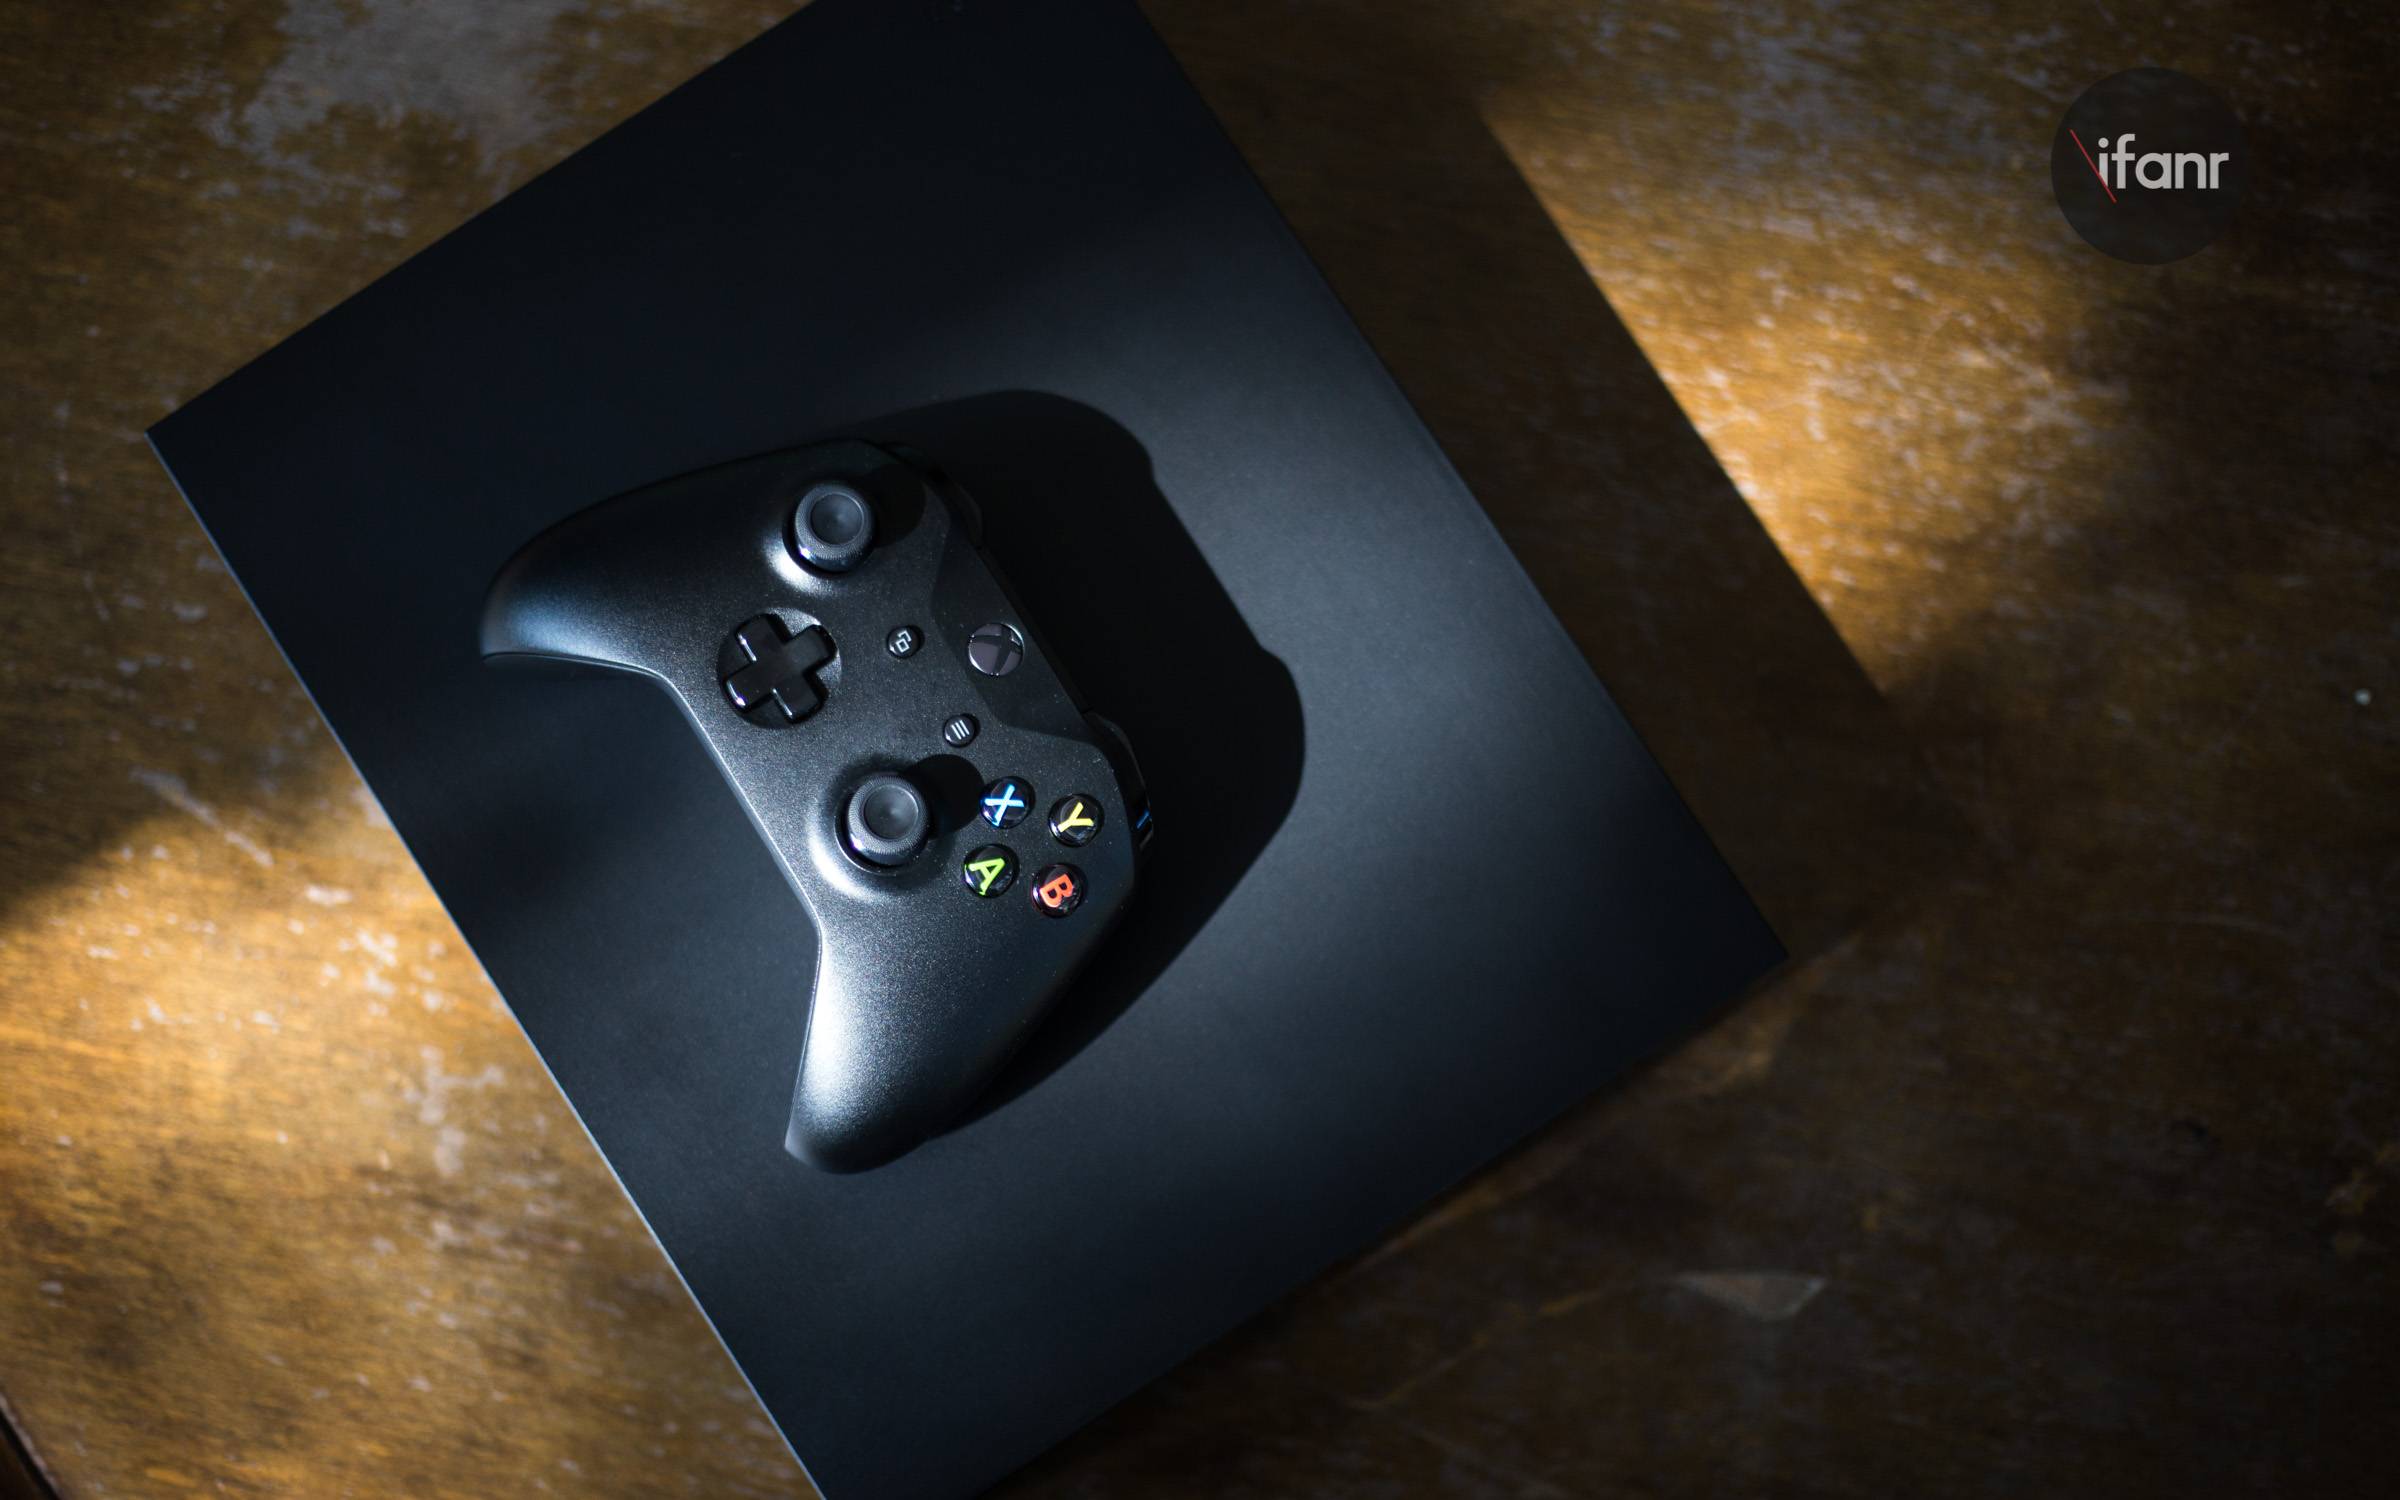 Xbox One X 体验:拳打任天堂 Switch,脚踢索尼